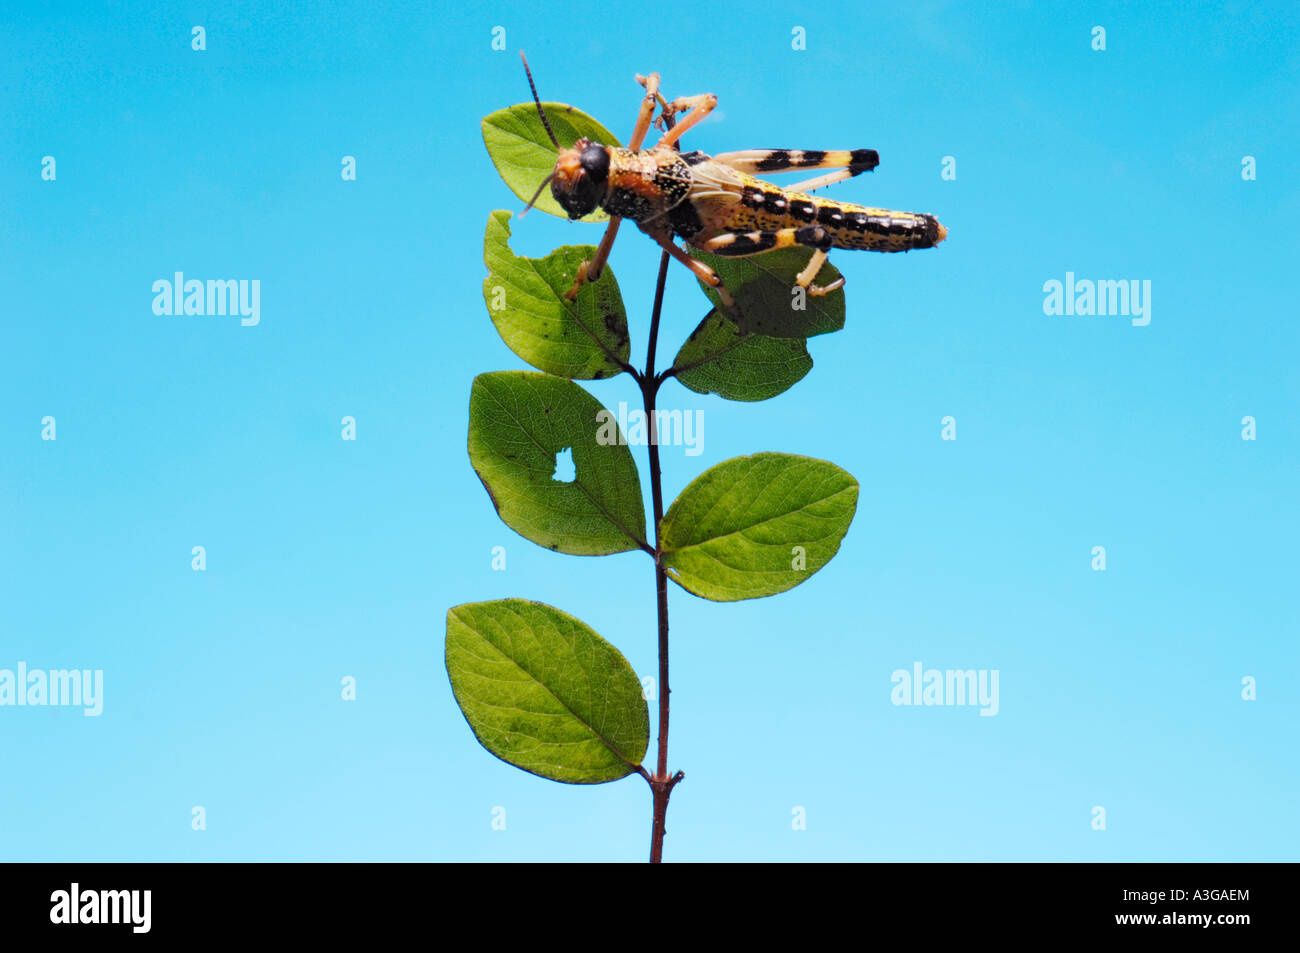 1 eine afrikanische Wüste Heuschrecke Schistocerca Gregaria Halbwüchsige GRASSHOPPER Essen feed grünes Blatt blau einfarbigen Hintergrund Stockfoto